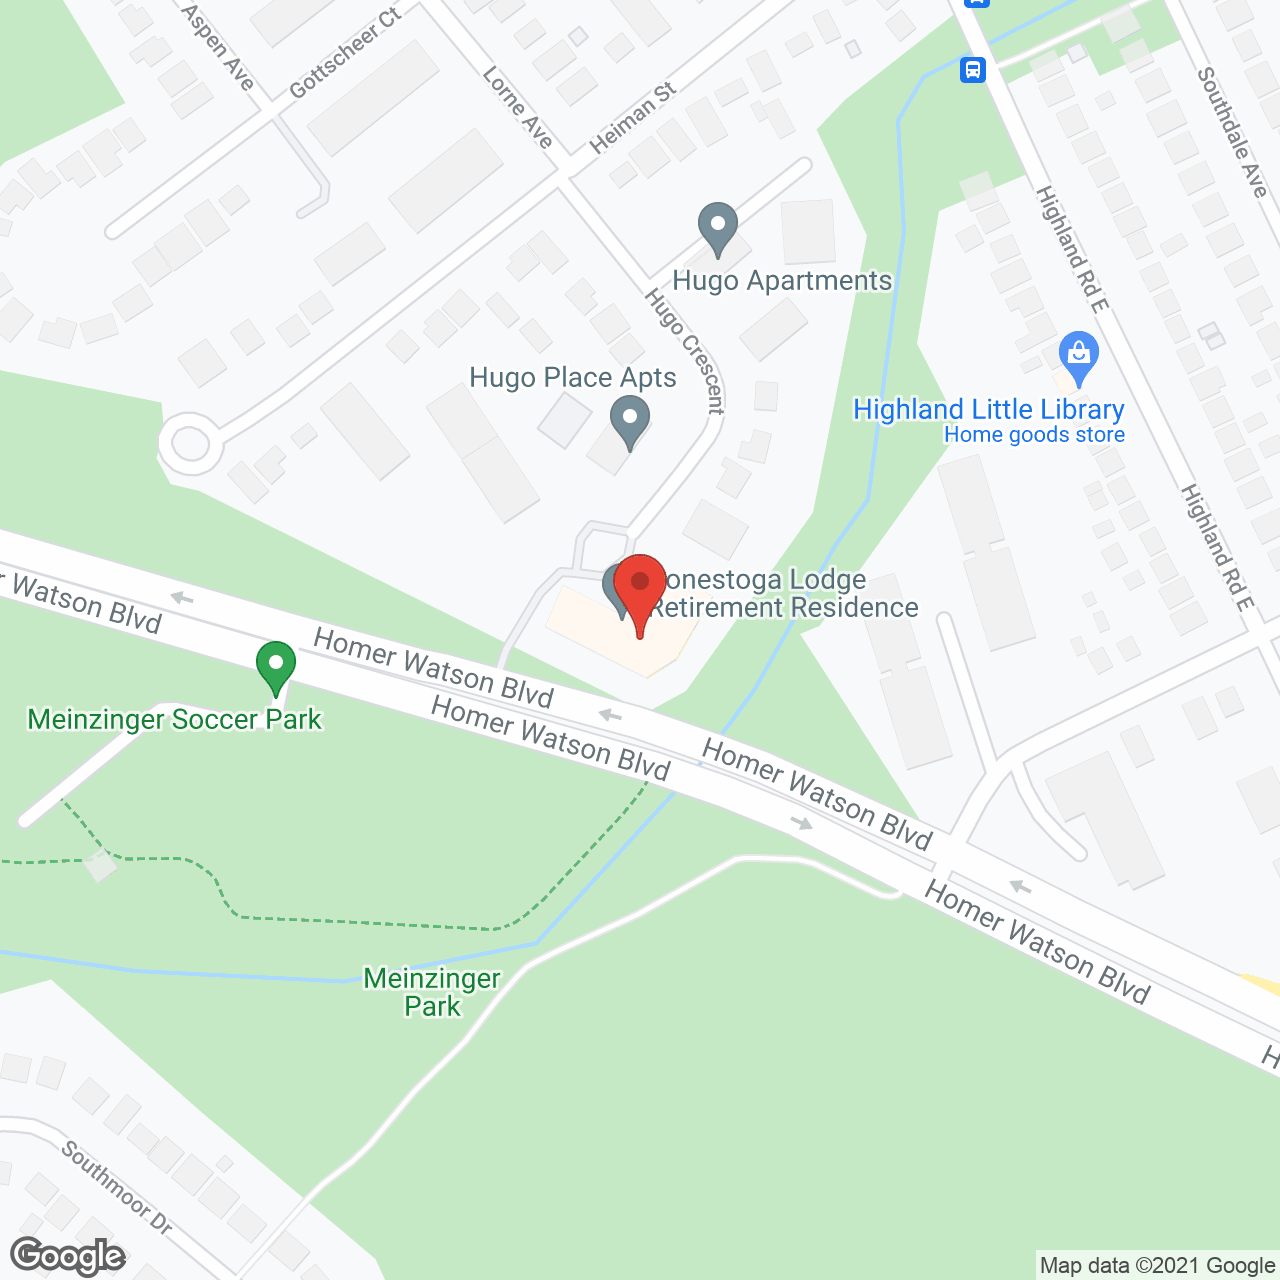 Conestoga Lodge in google map